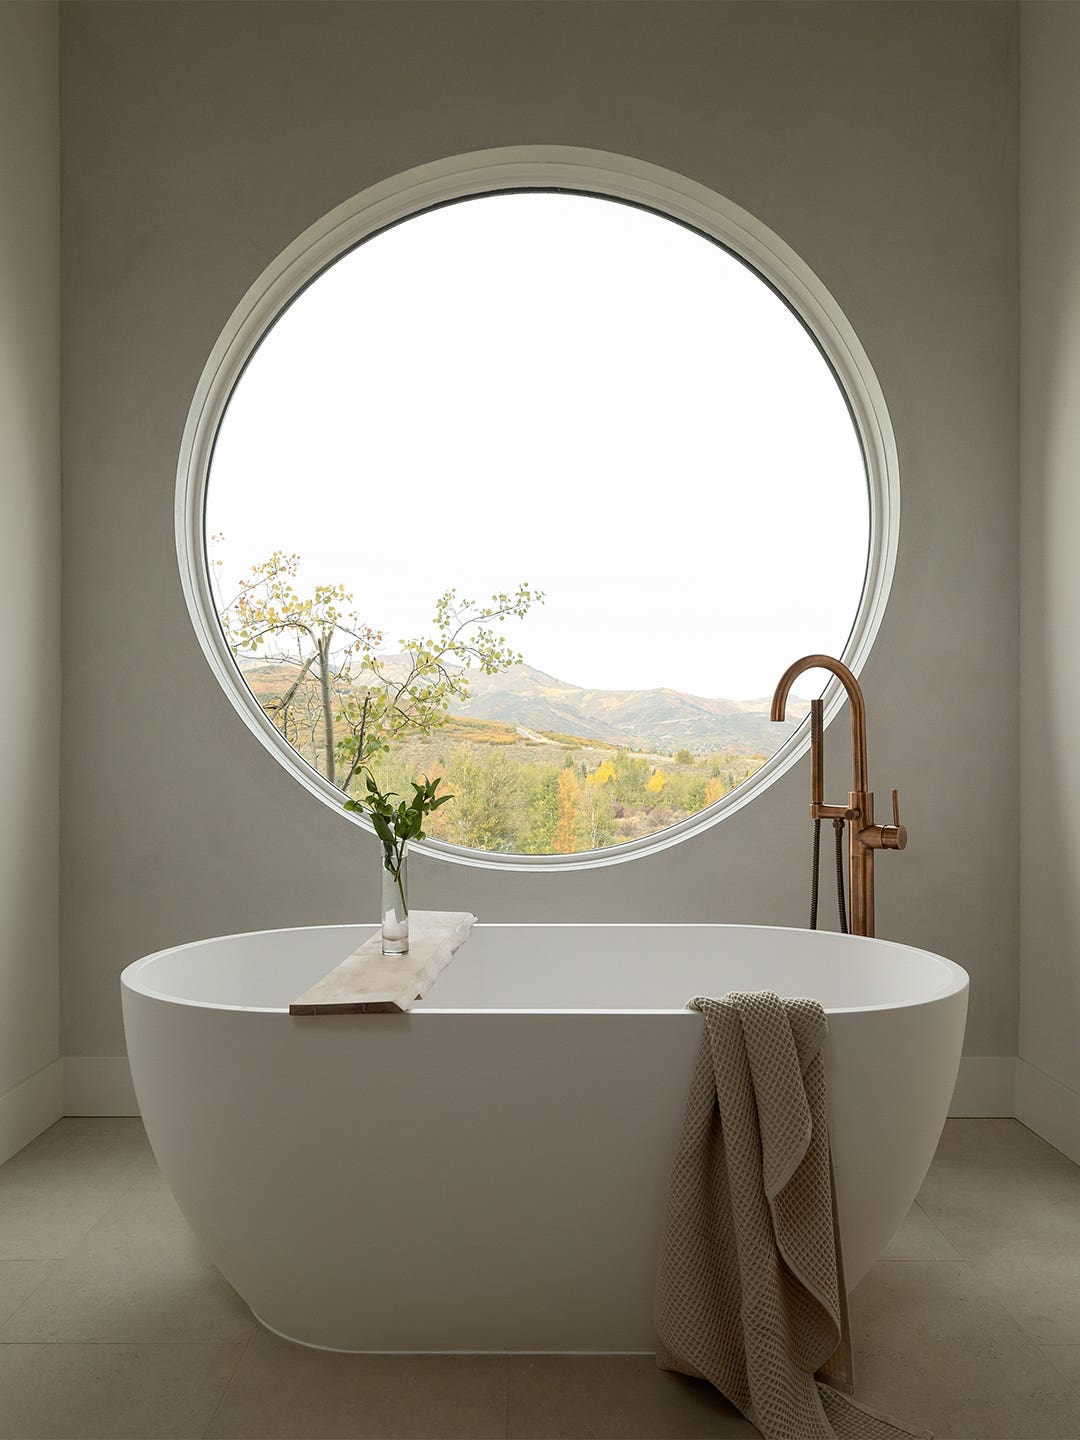 round window over tub